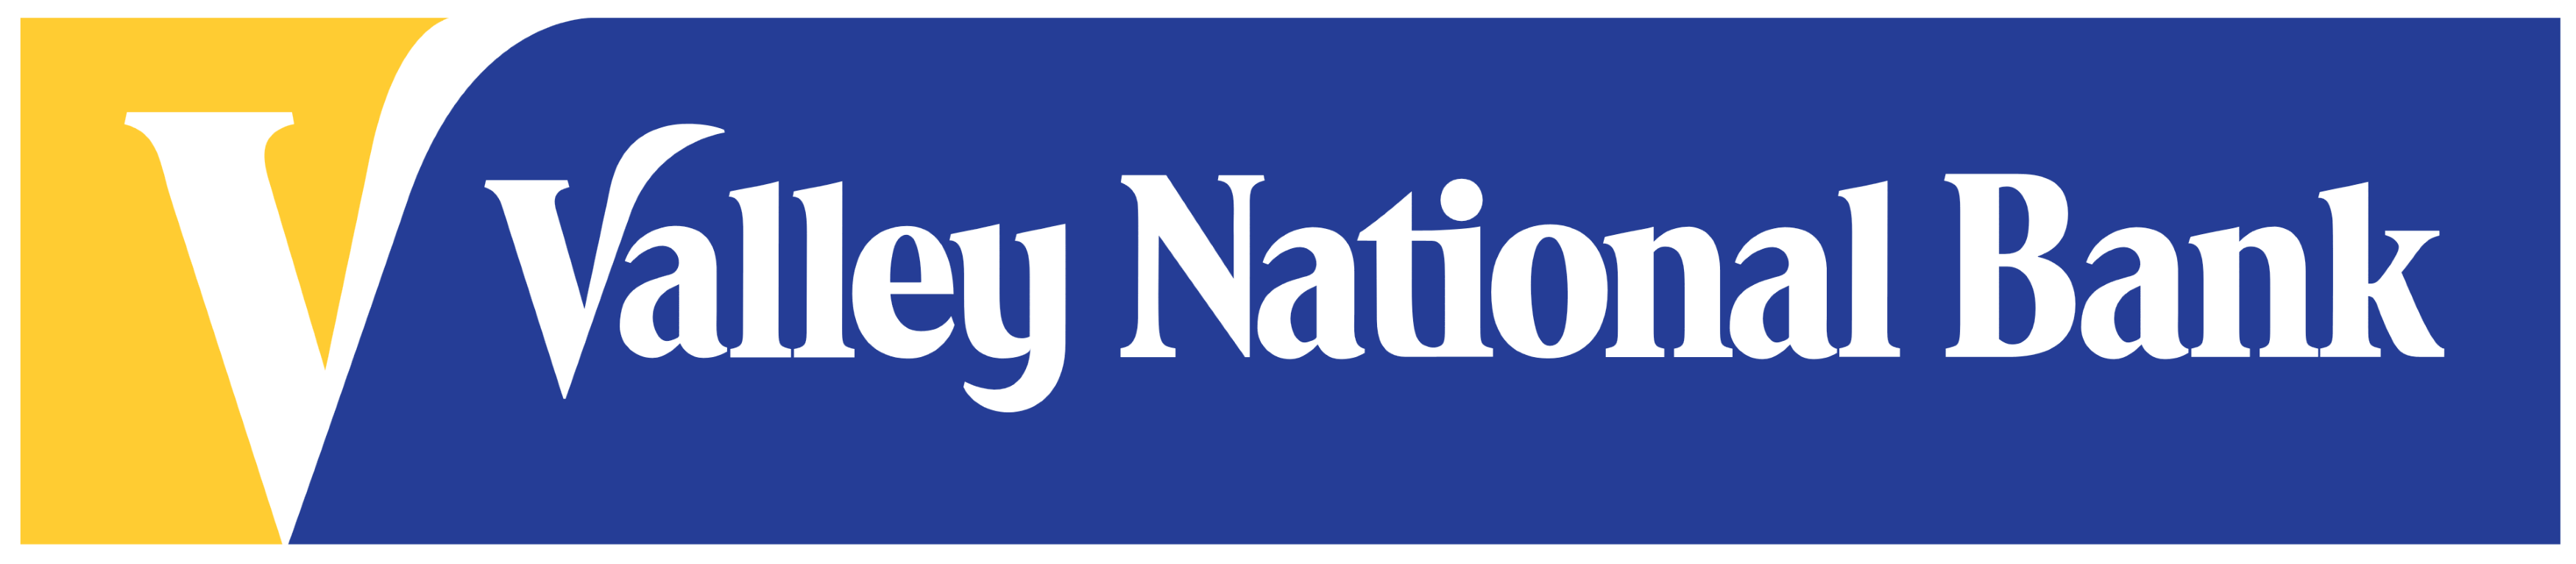 Valley National Bank logo, logotype